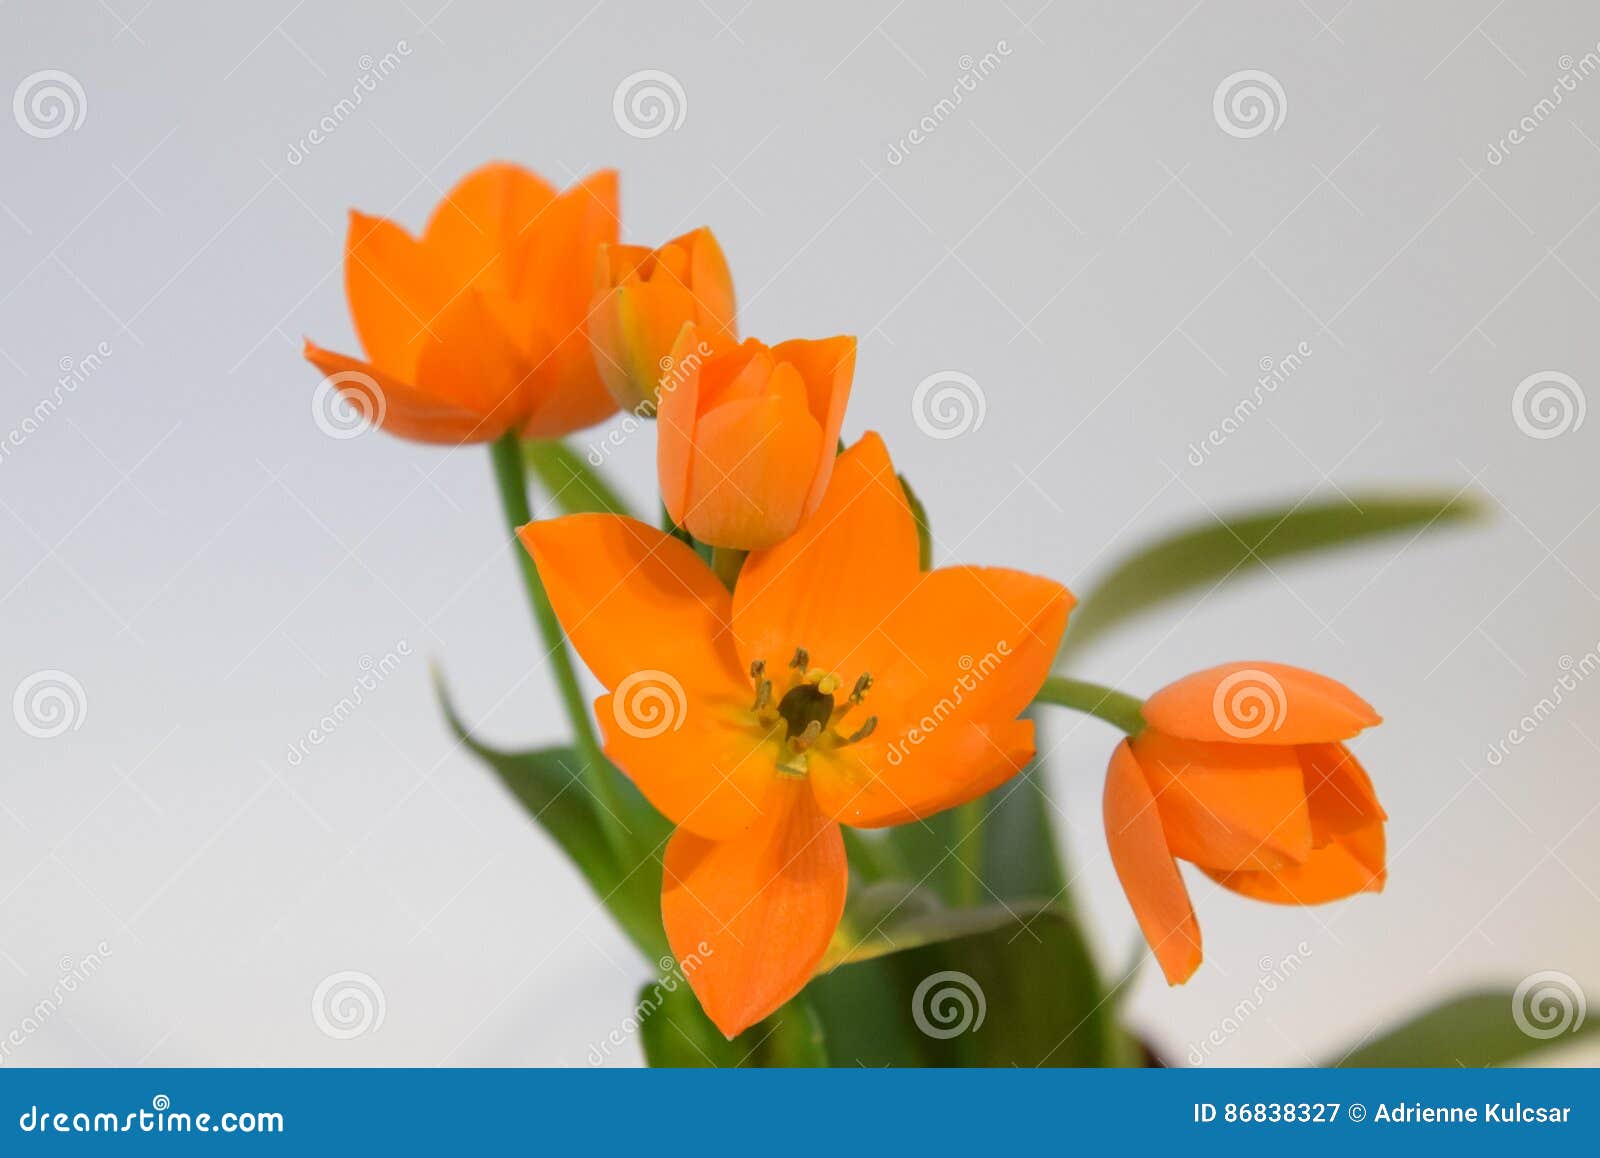 Orange Stern Von Bethlehem Blume Ornithogalum Stockbild Bild Von Frost Garten 86838327